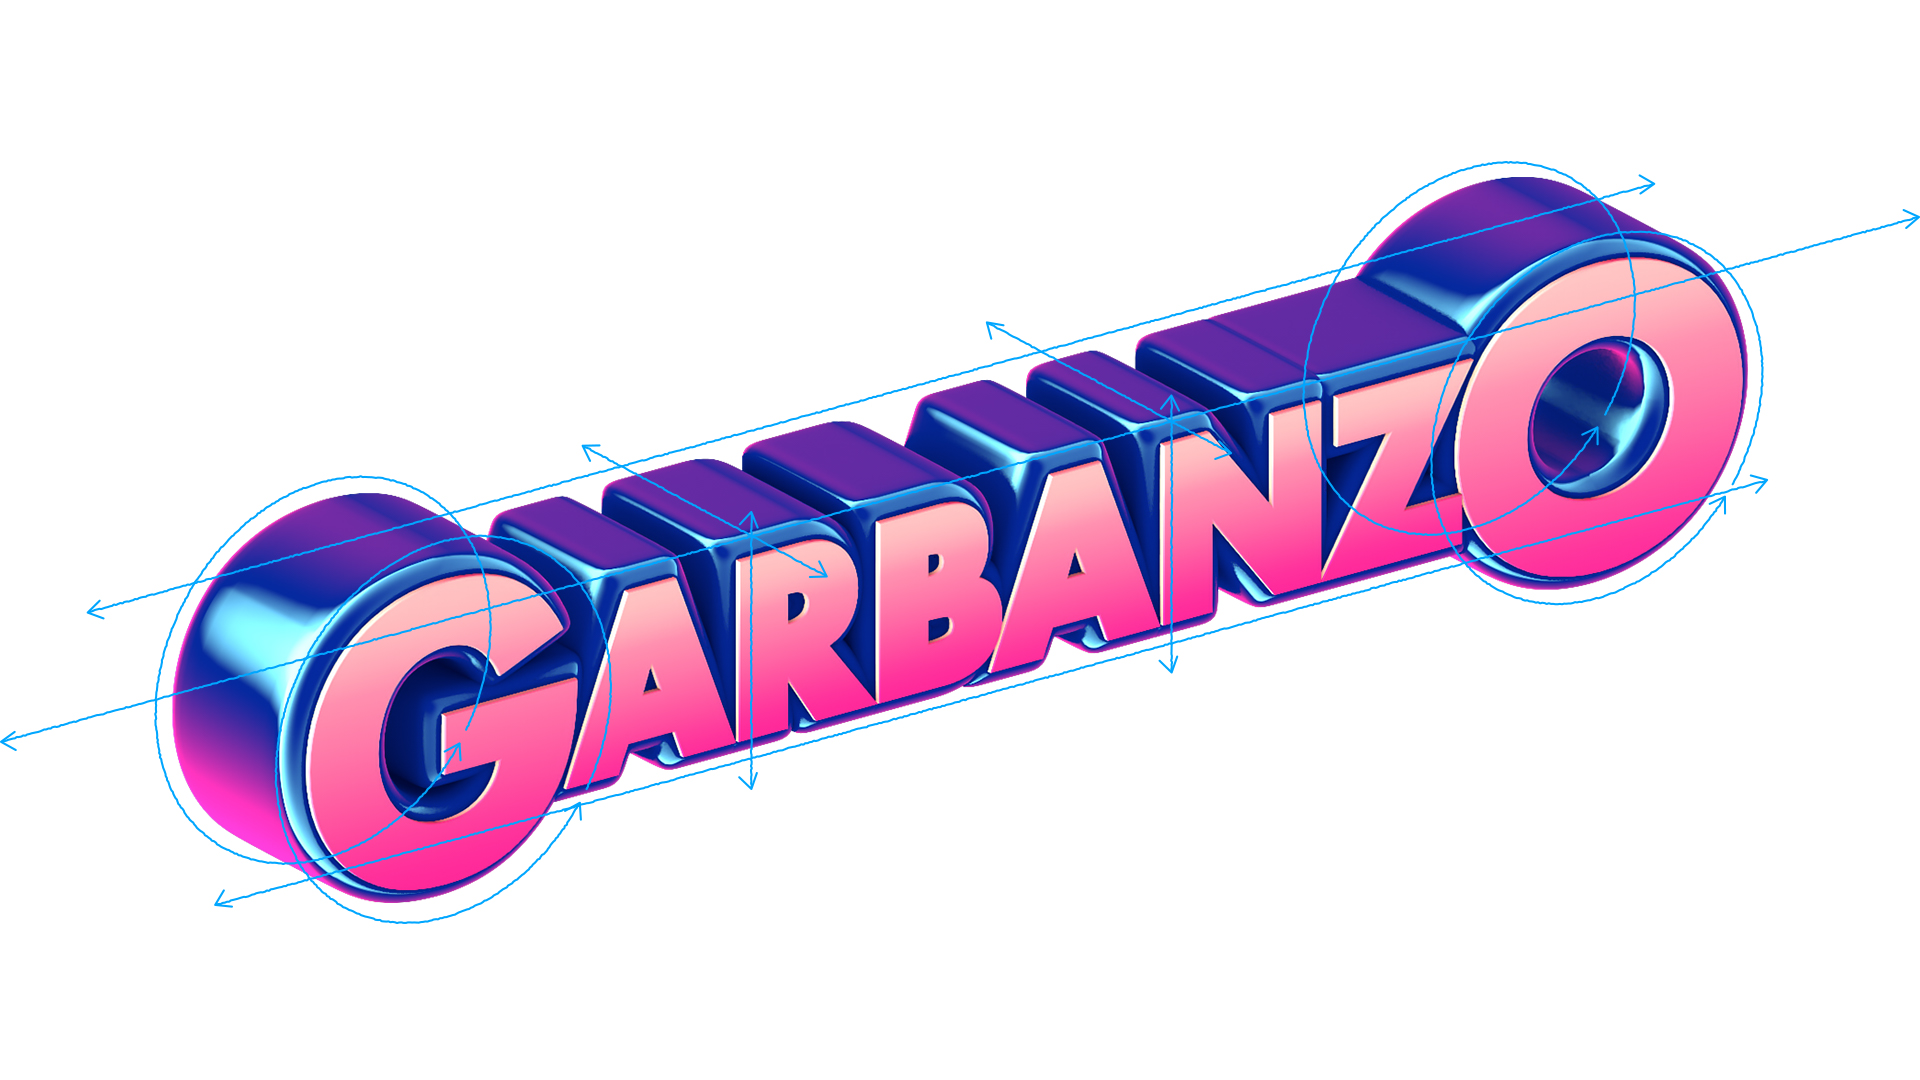 Garbanzo Rebrand 94